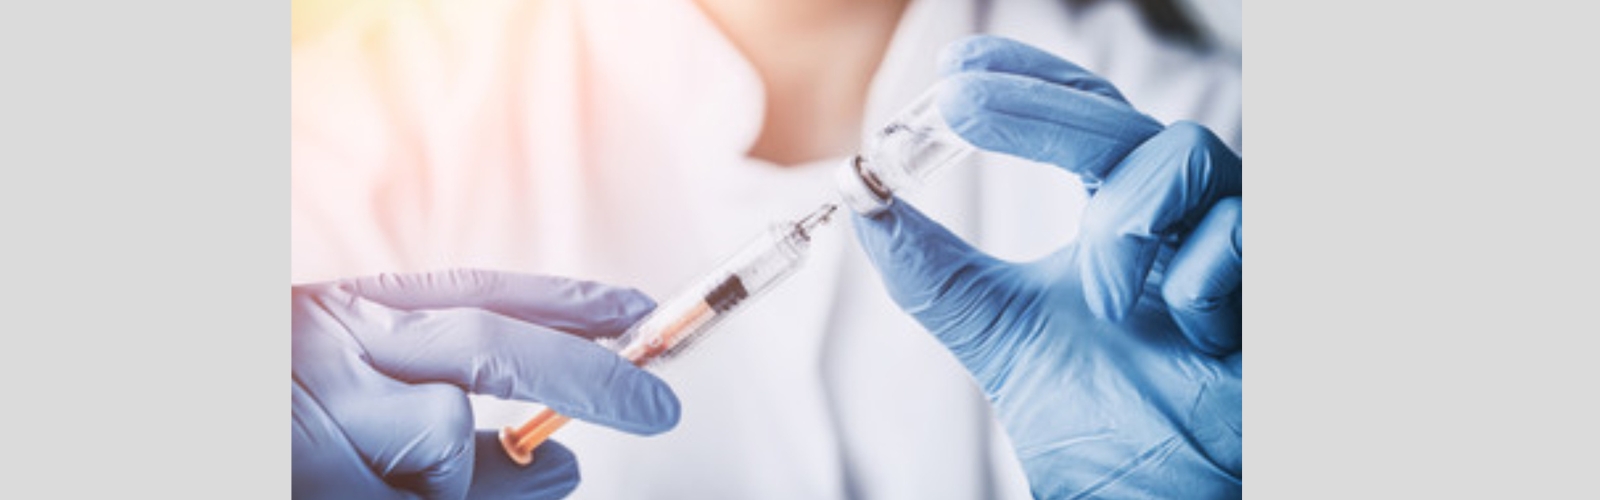 Impatto psicologico della campagna vaccinale contro il Covid-19 nei pazienti oncologici